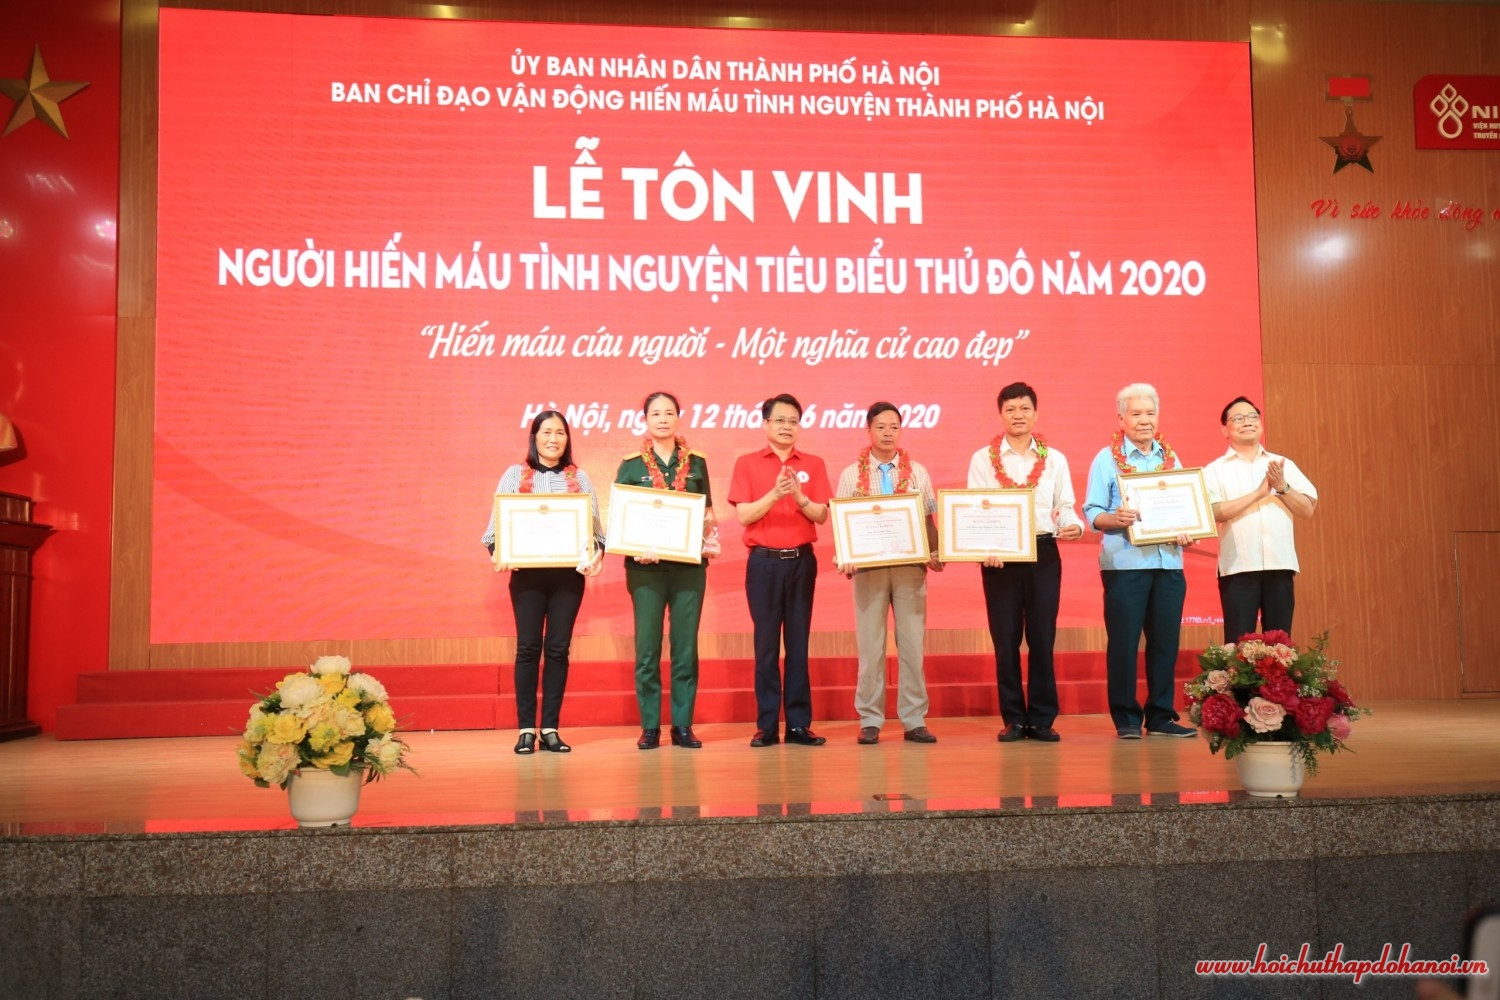 Hà Nội tôn vinh 61 gia đình và 120 cá nhân tiêu biểu trong phong trào hiến máu tình nguyện